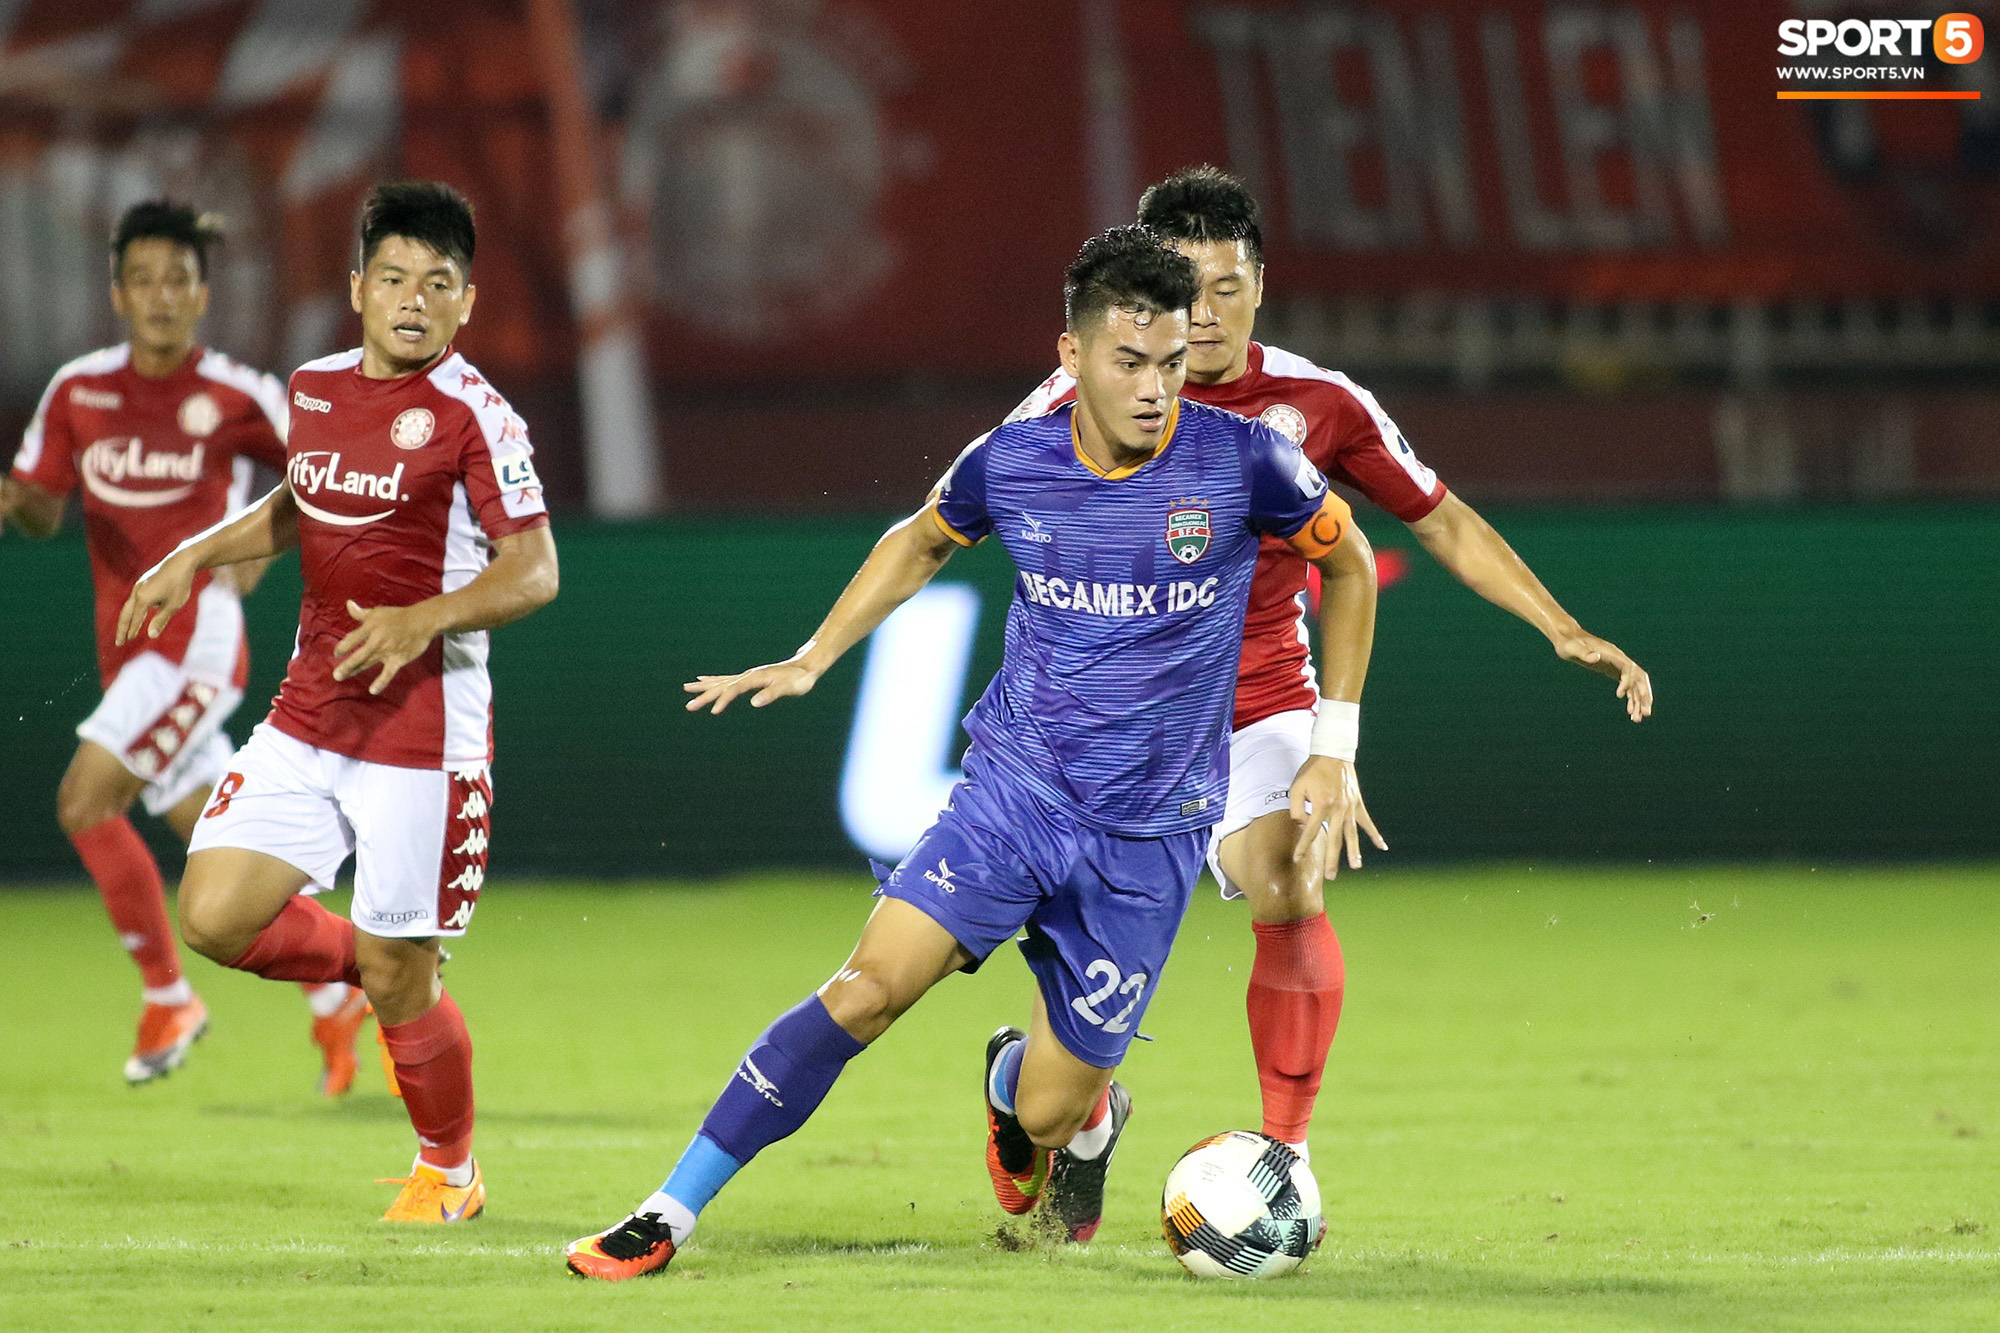 Tiến Linh trở thành cái tên đầu tiên của lứa U20 Việt Nam dự World Cup làm được điều chưa từng có ở V.League - Ảnh 2.